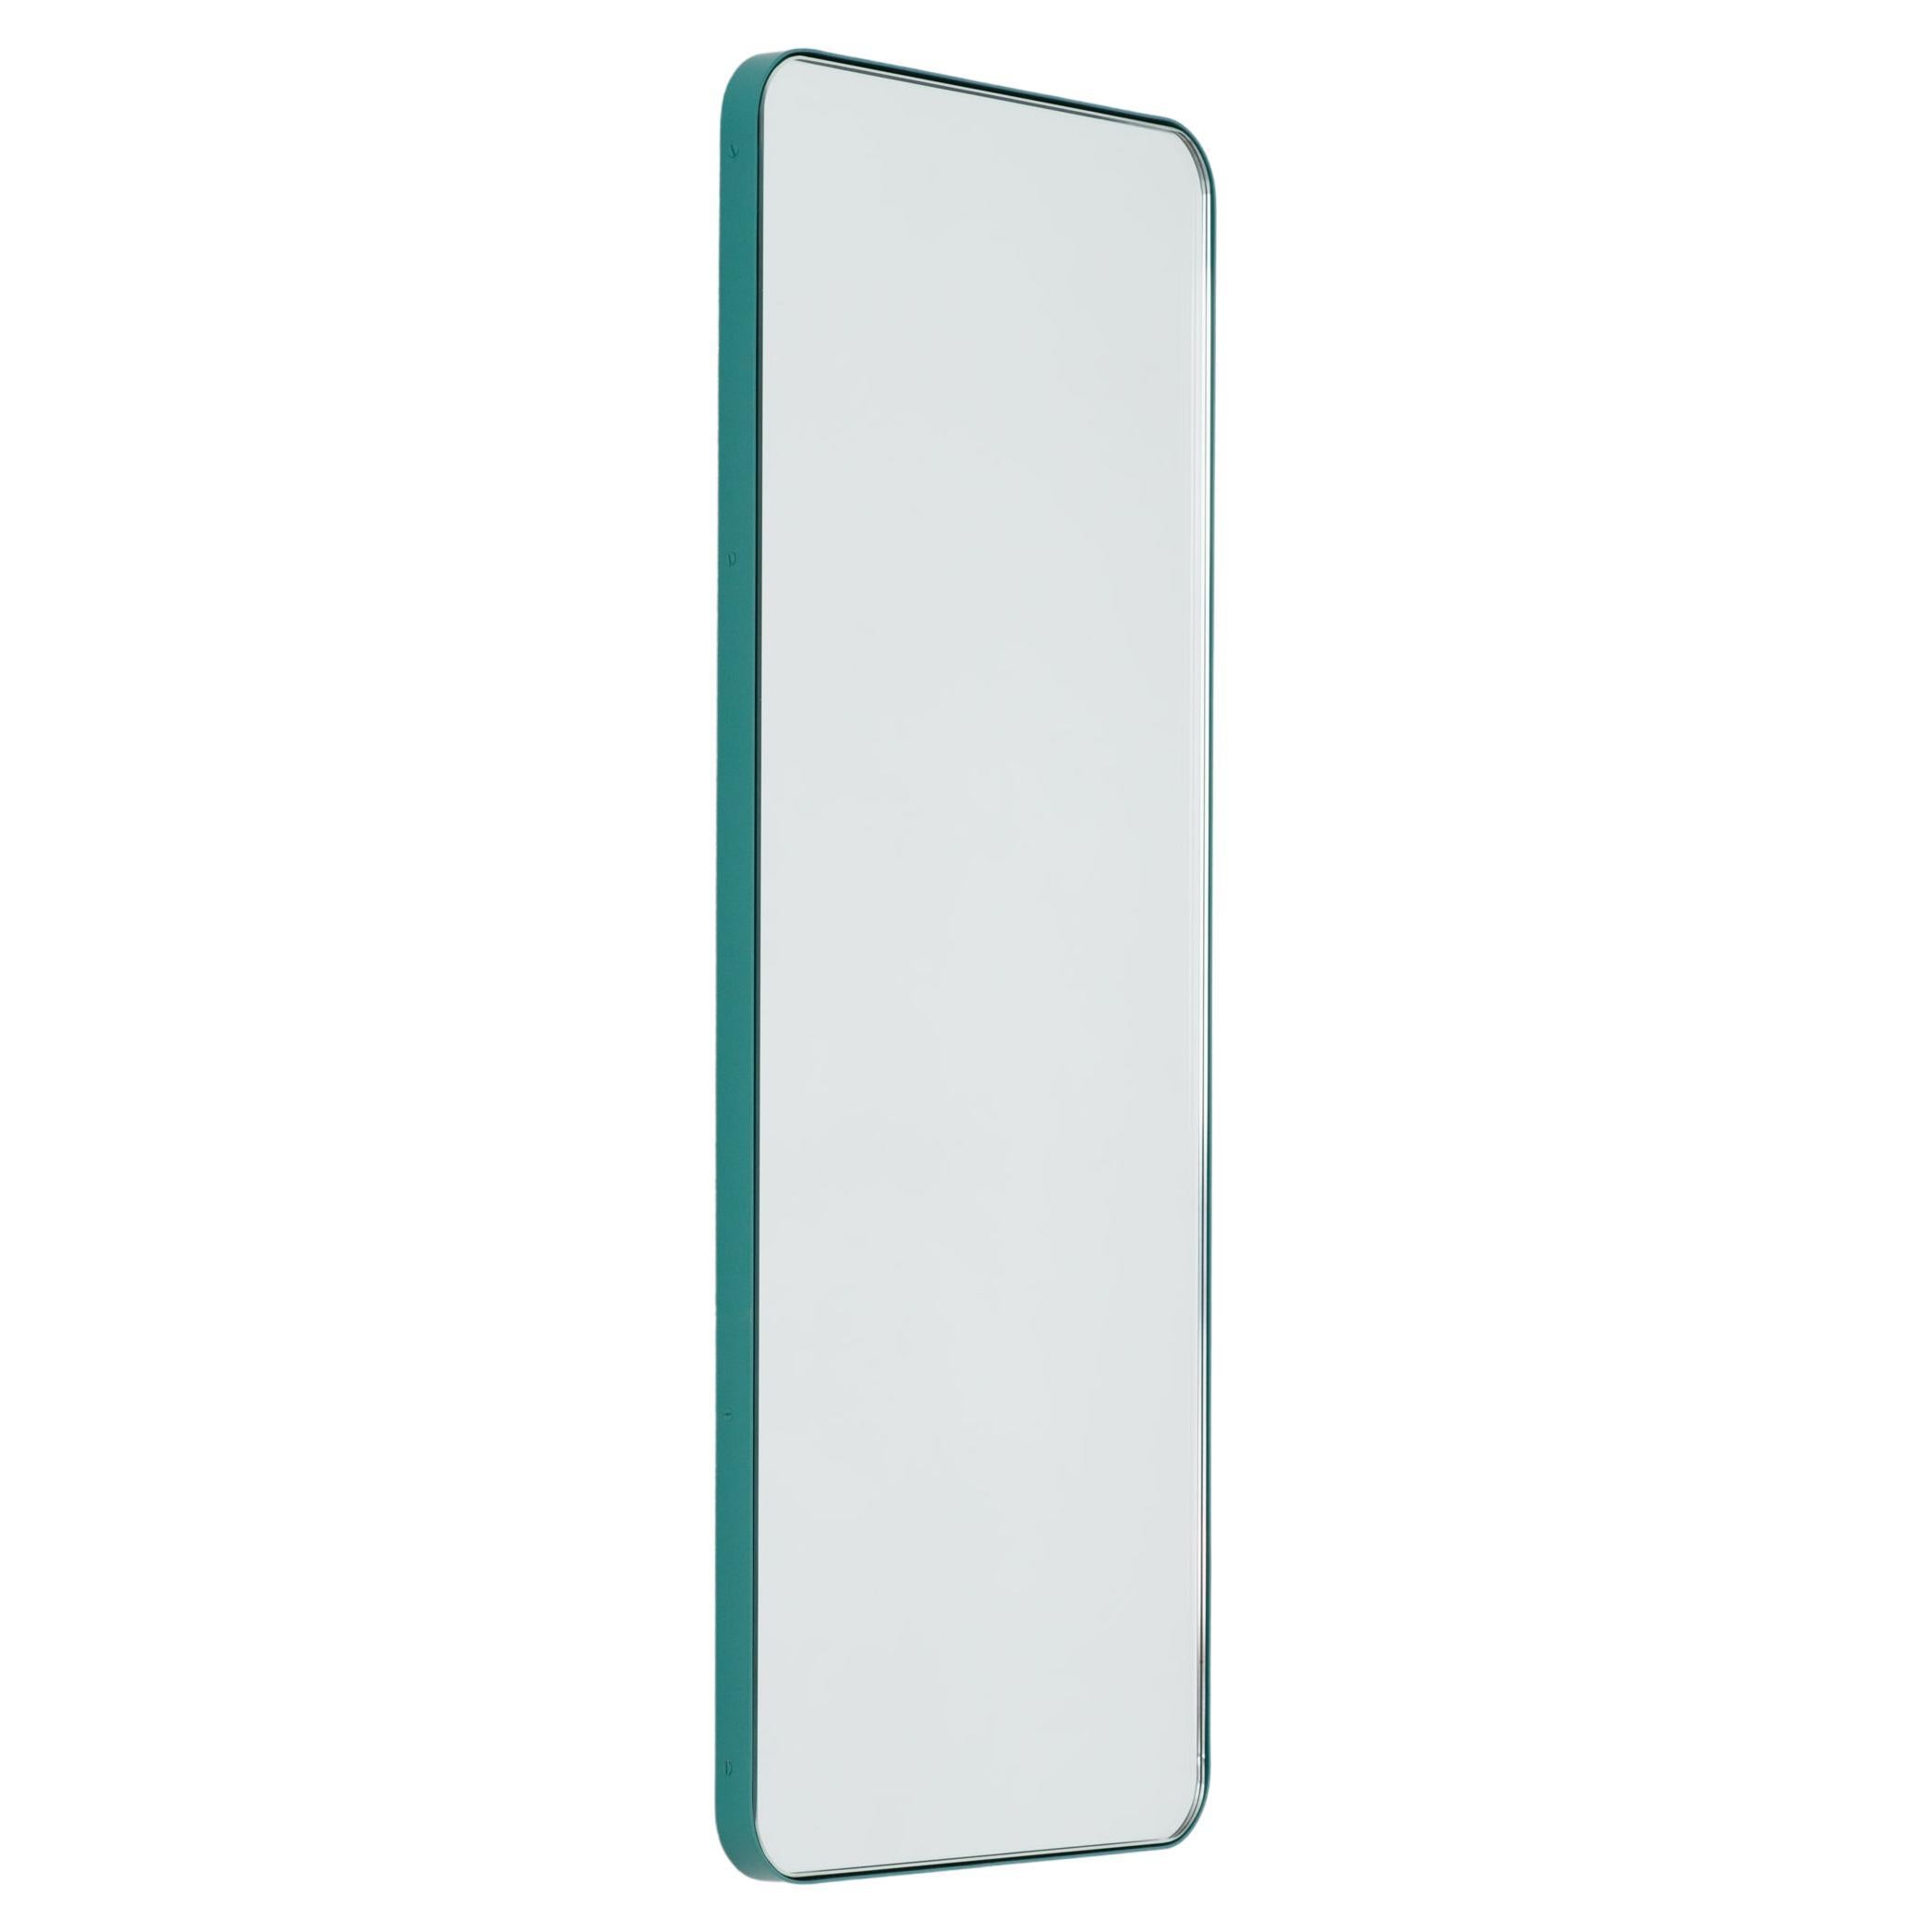 Miroir rectangulaire personnalisable Quadris avec cadre turquoise menthe, moyen